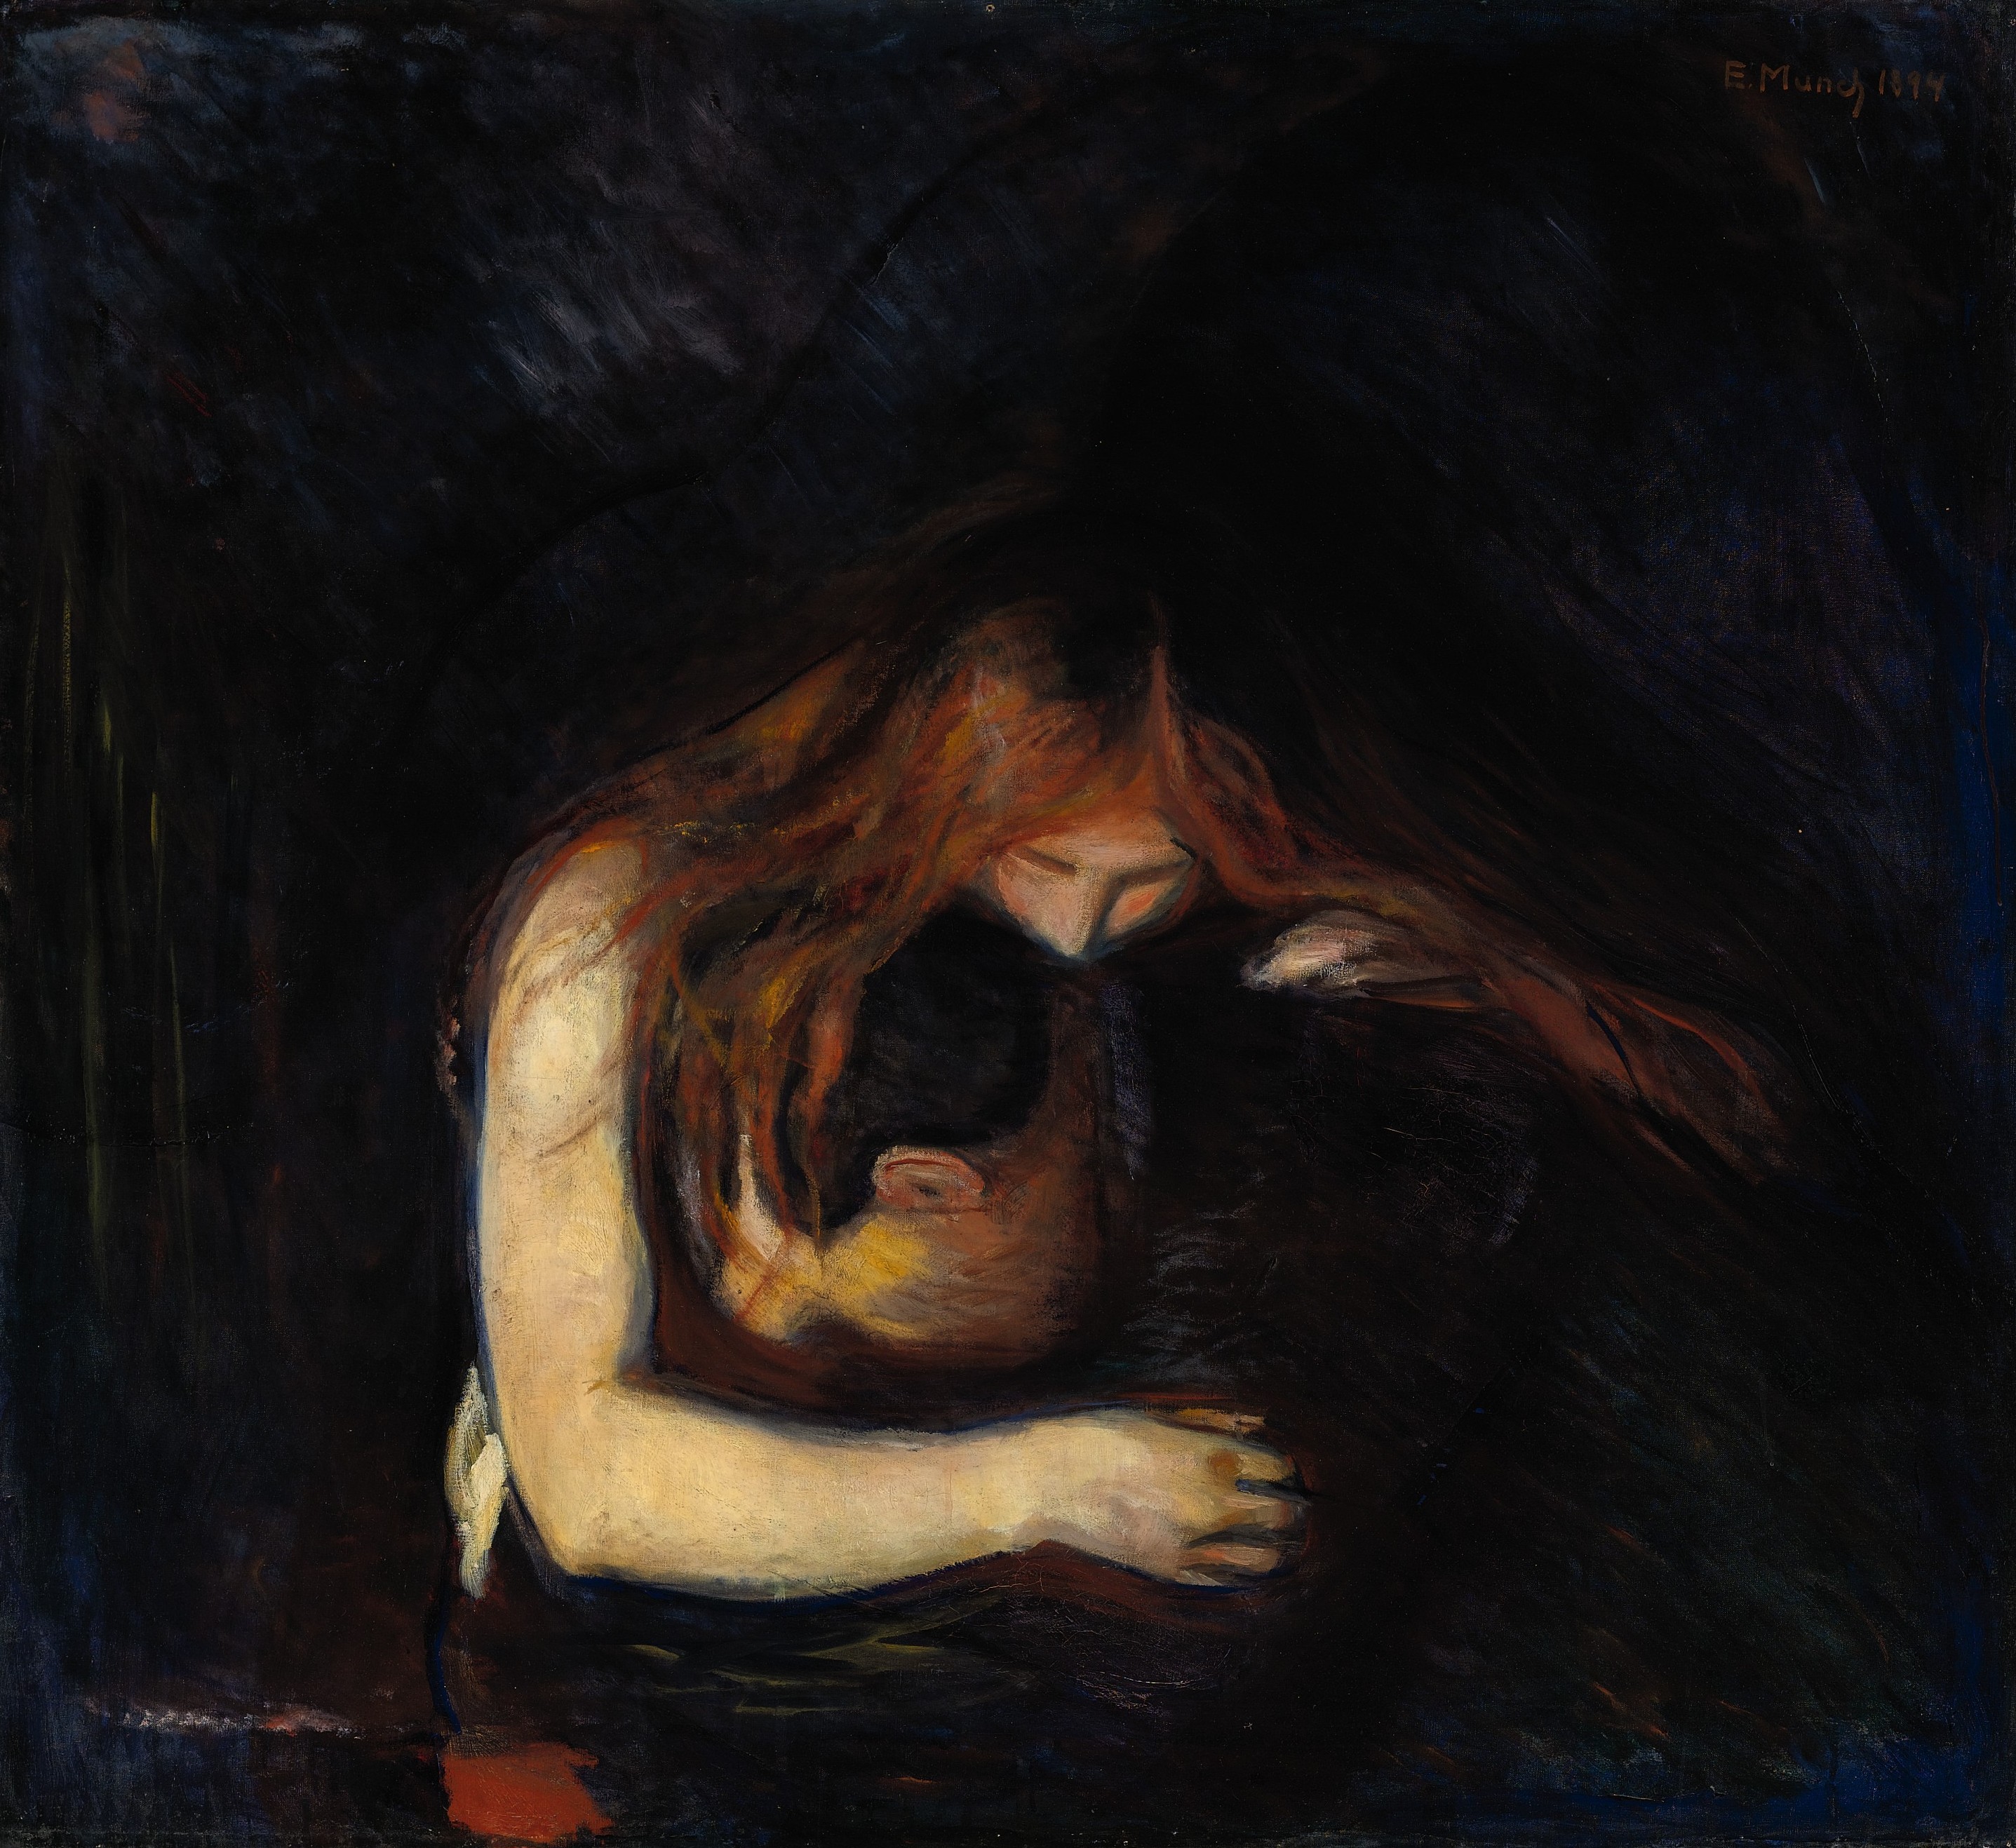 Vampiro by Edvard Munch - 1893 Colección privada